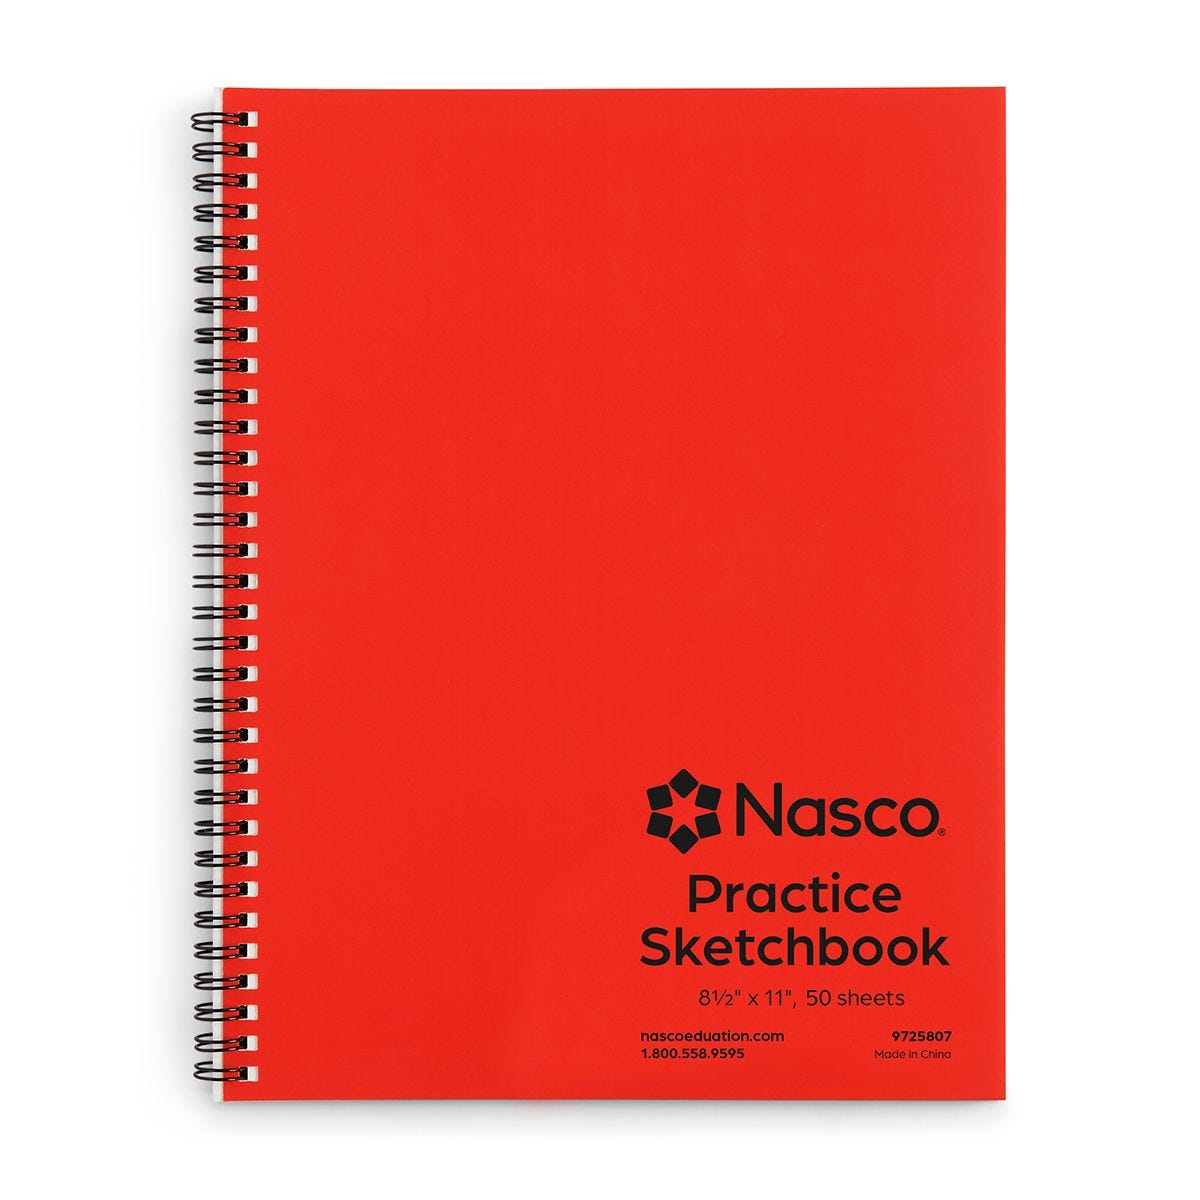 Nasco Practice Sketchbook - 50 Sheets